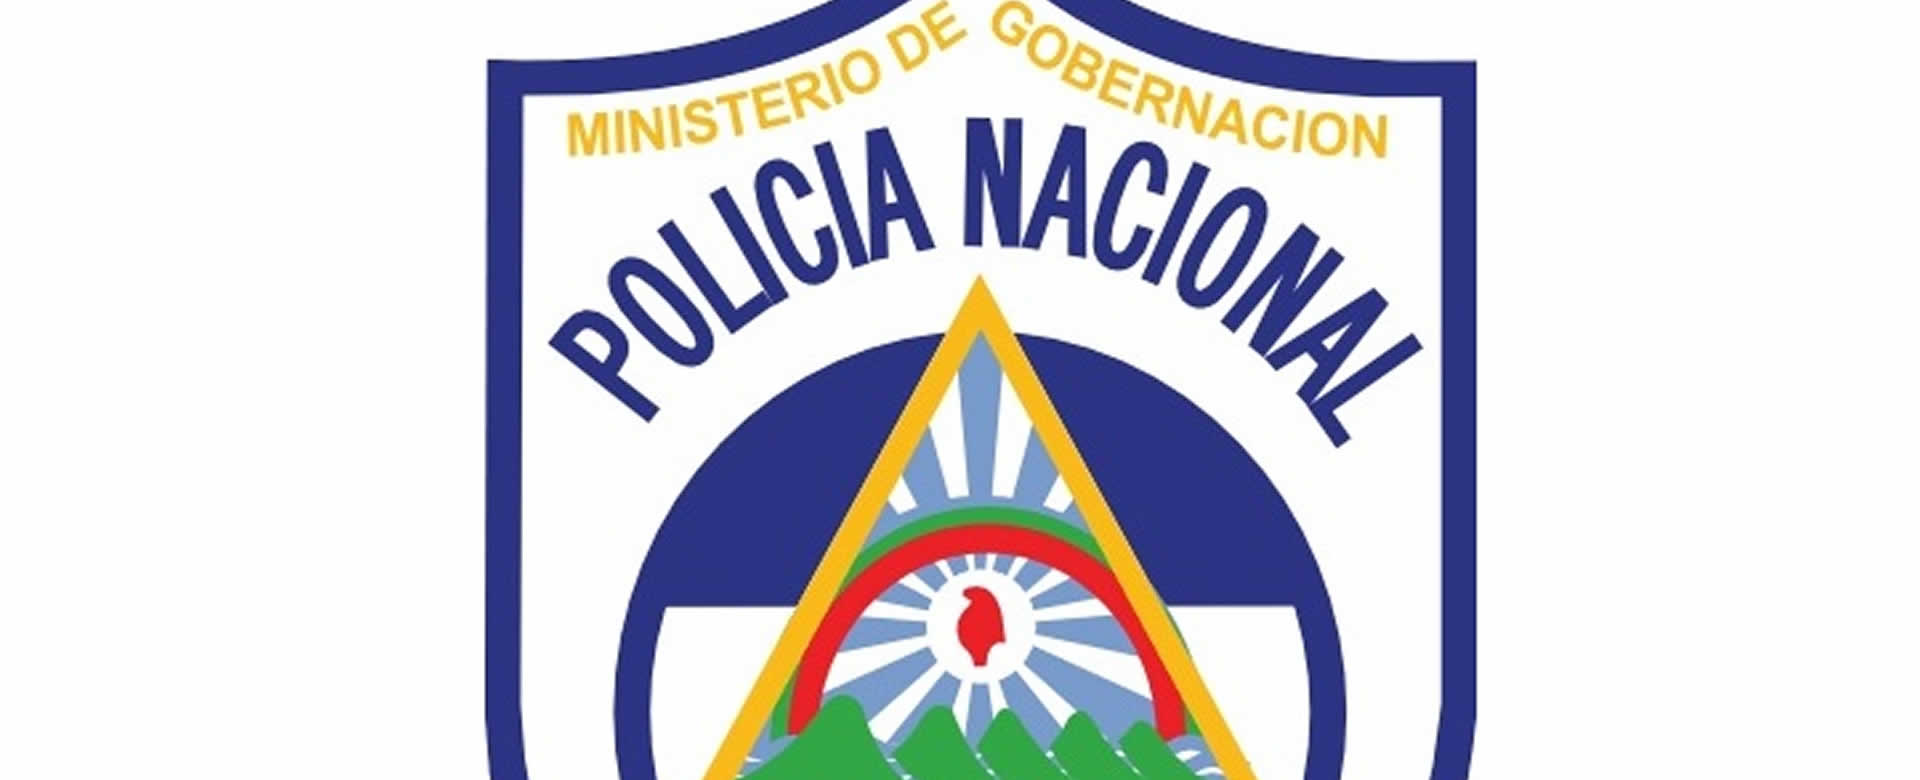 Policía Nacional comunica las normas de seguridad en las fiestas Santo Domingo